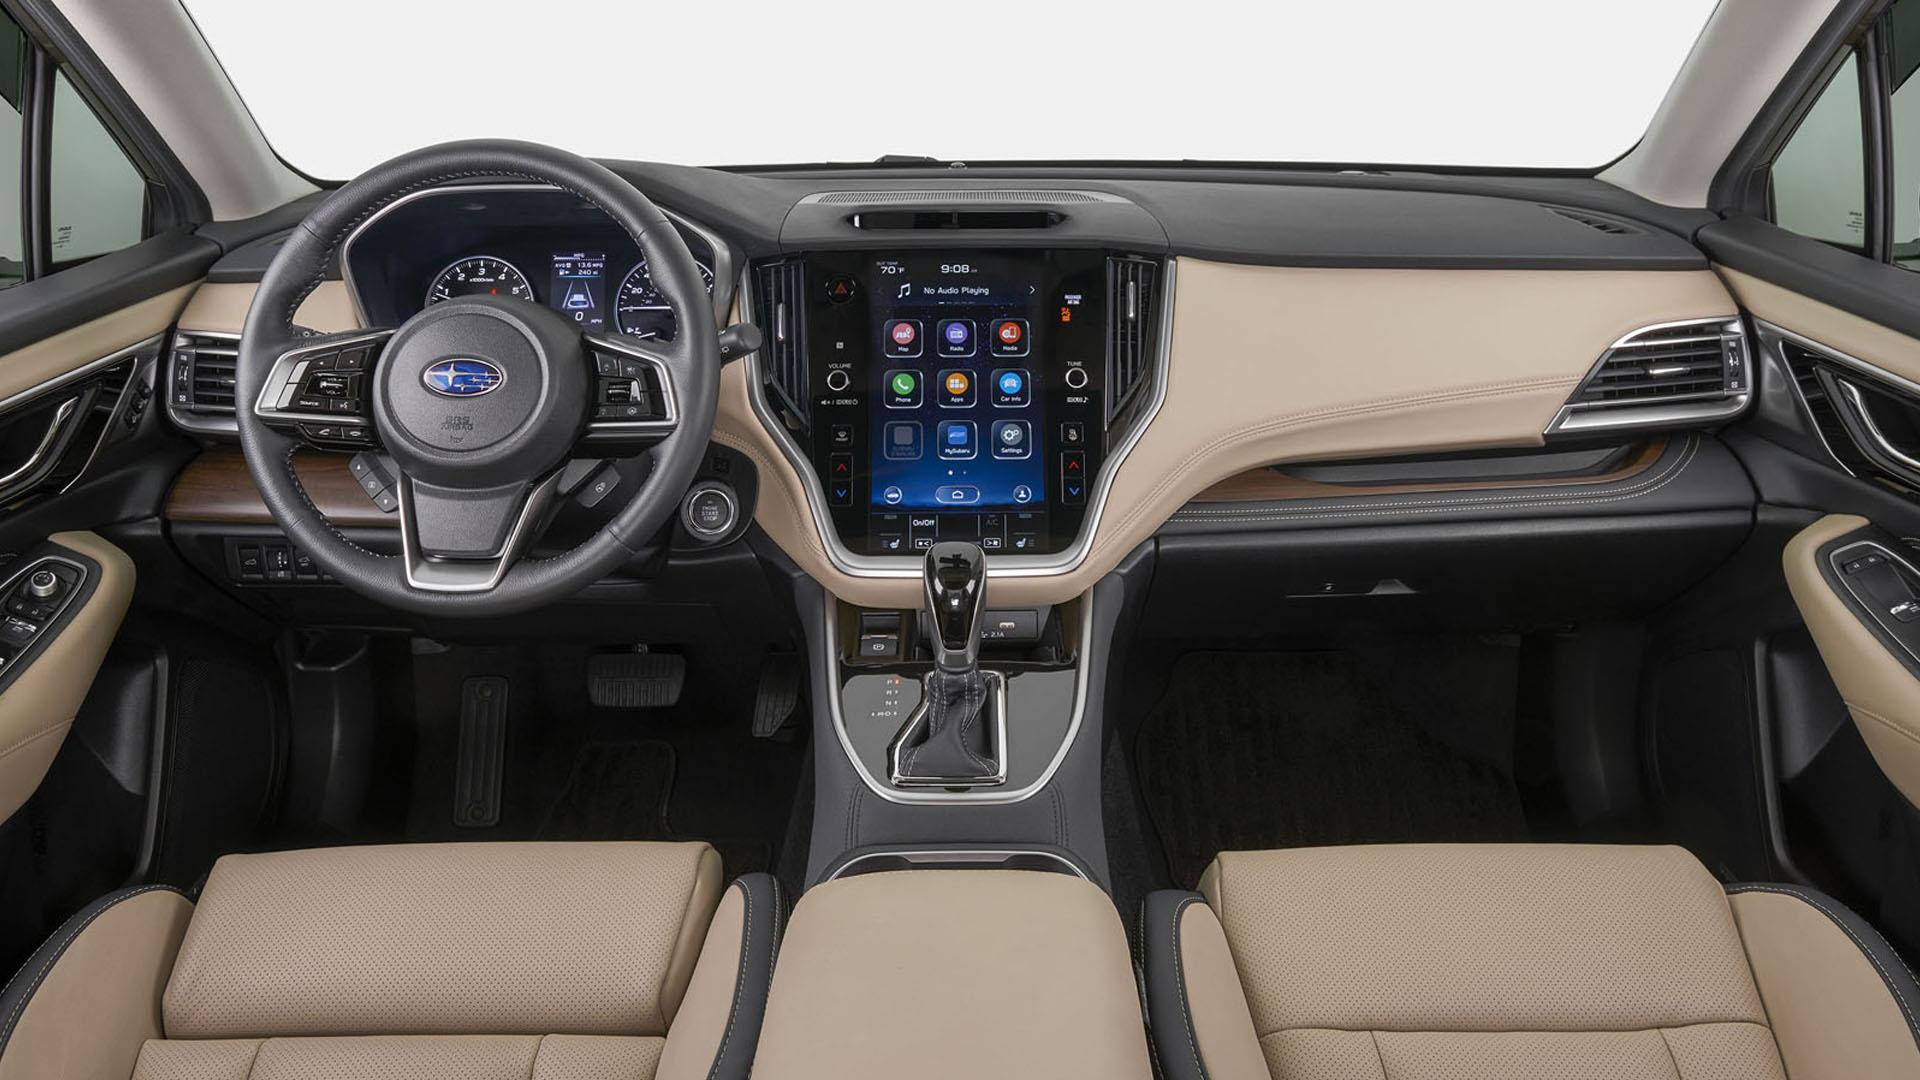 2023 Subaru Interior Trim Kit Woodgrain. Upgrade your interior design